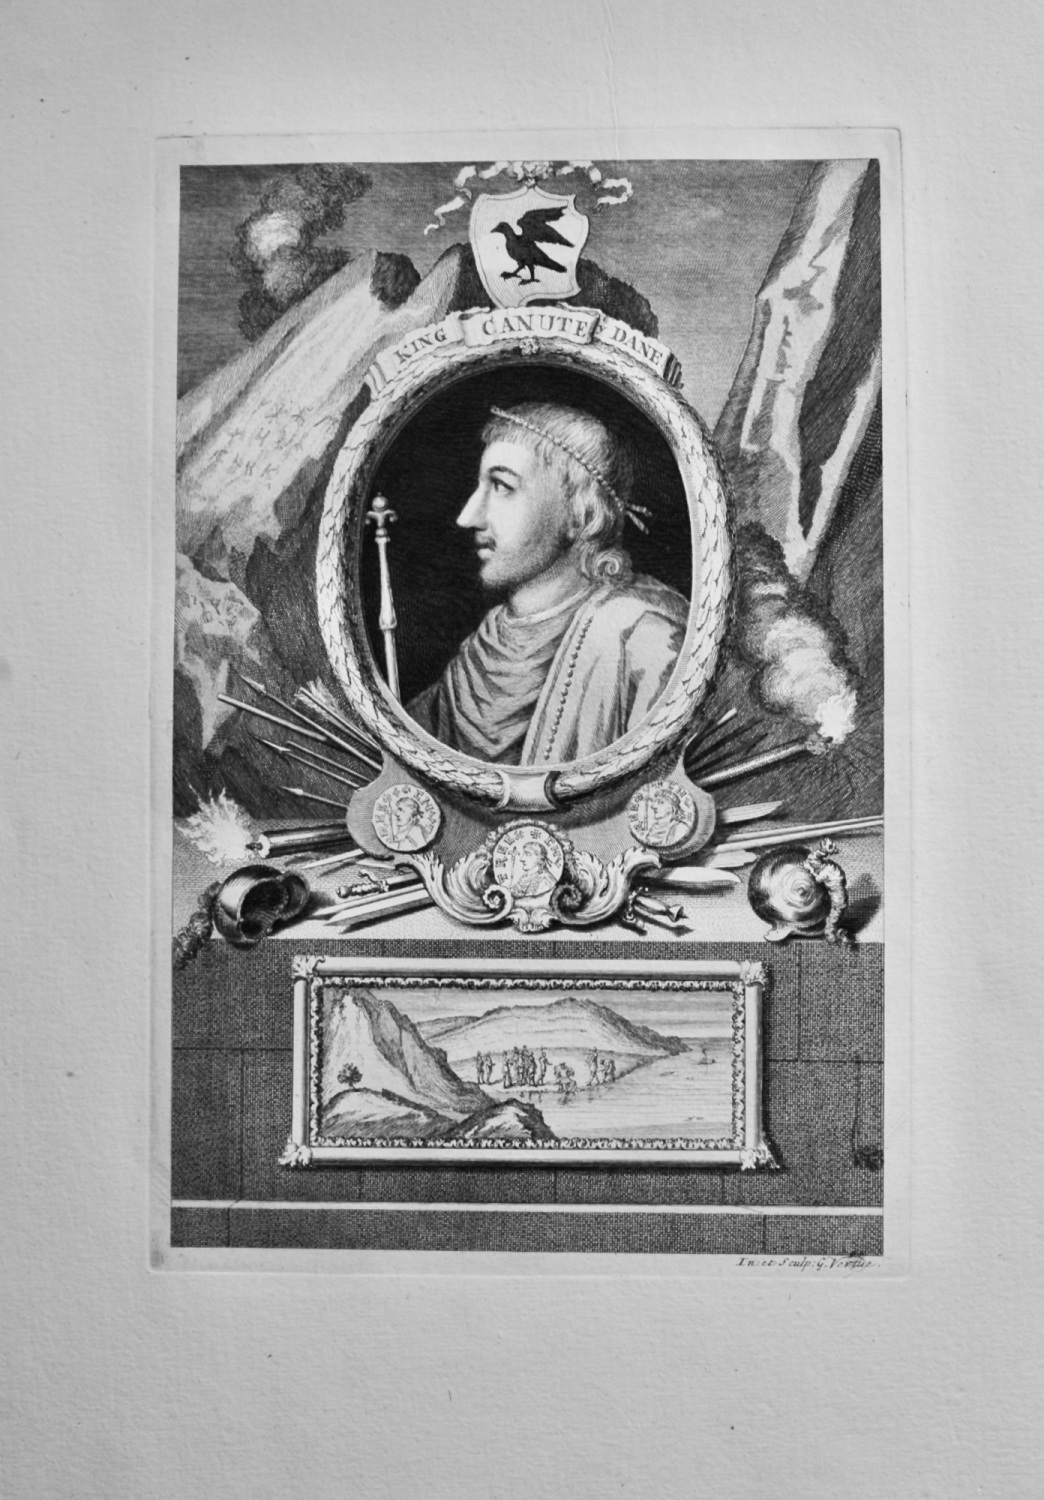 King Canute ye Dane.  1736.